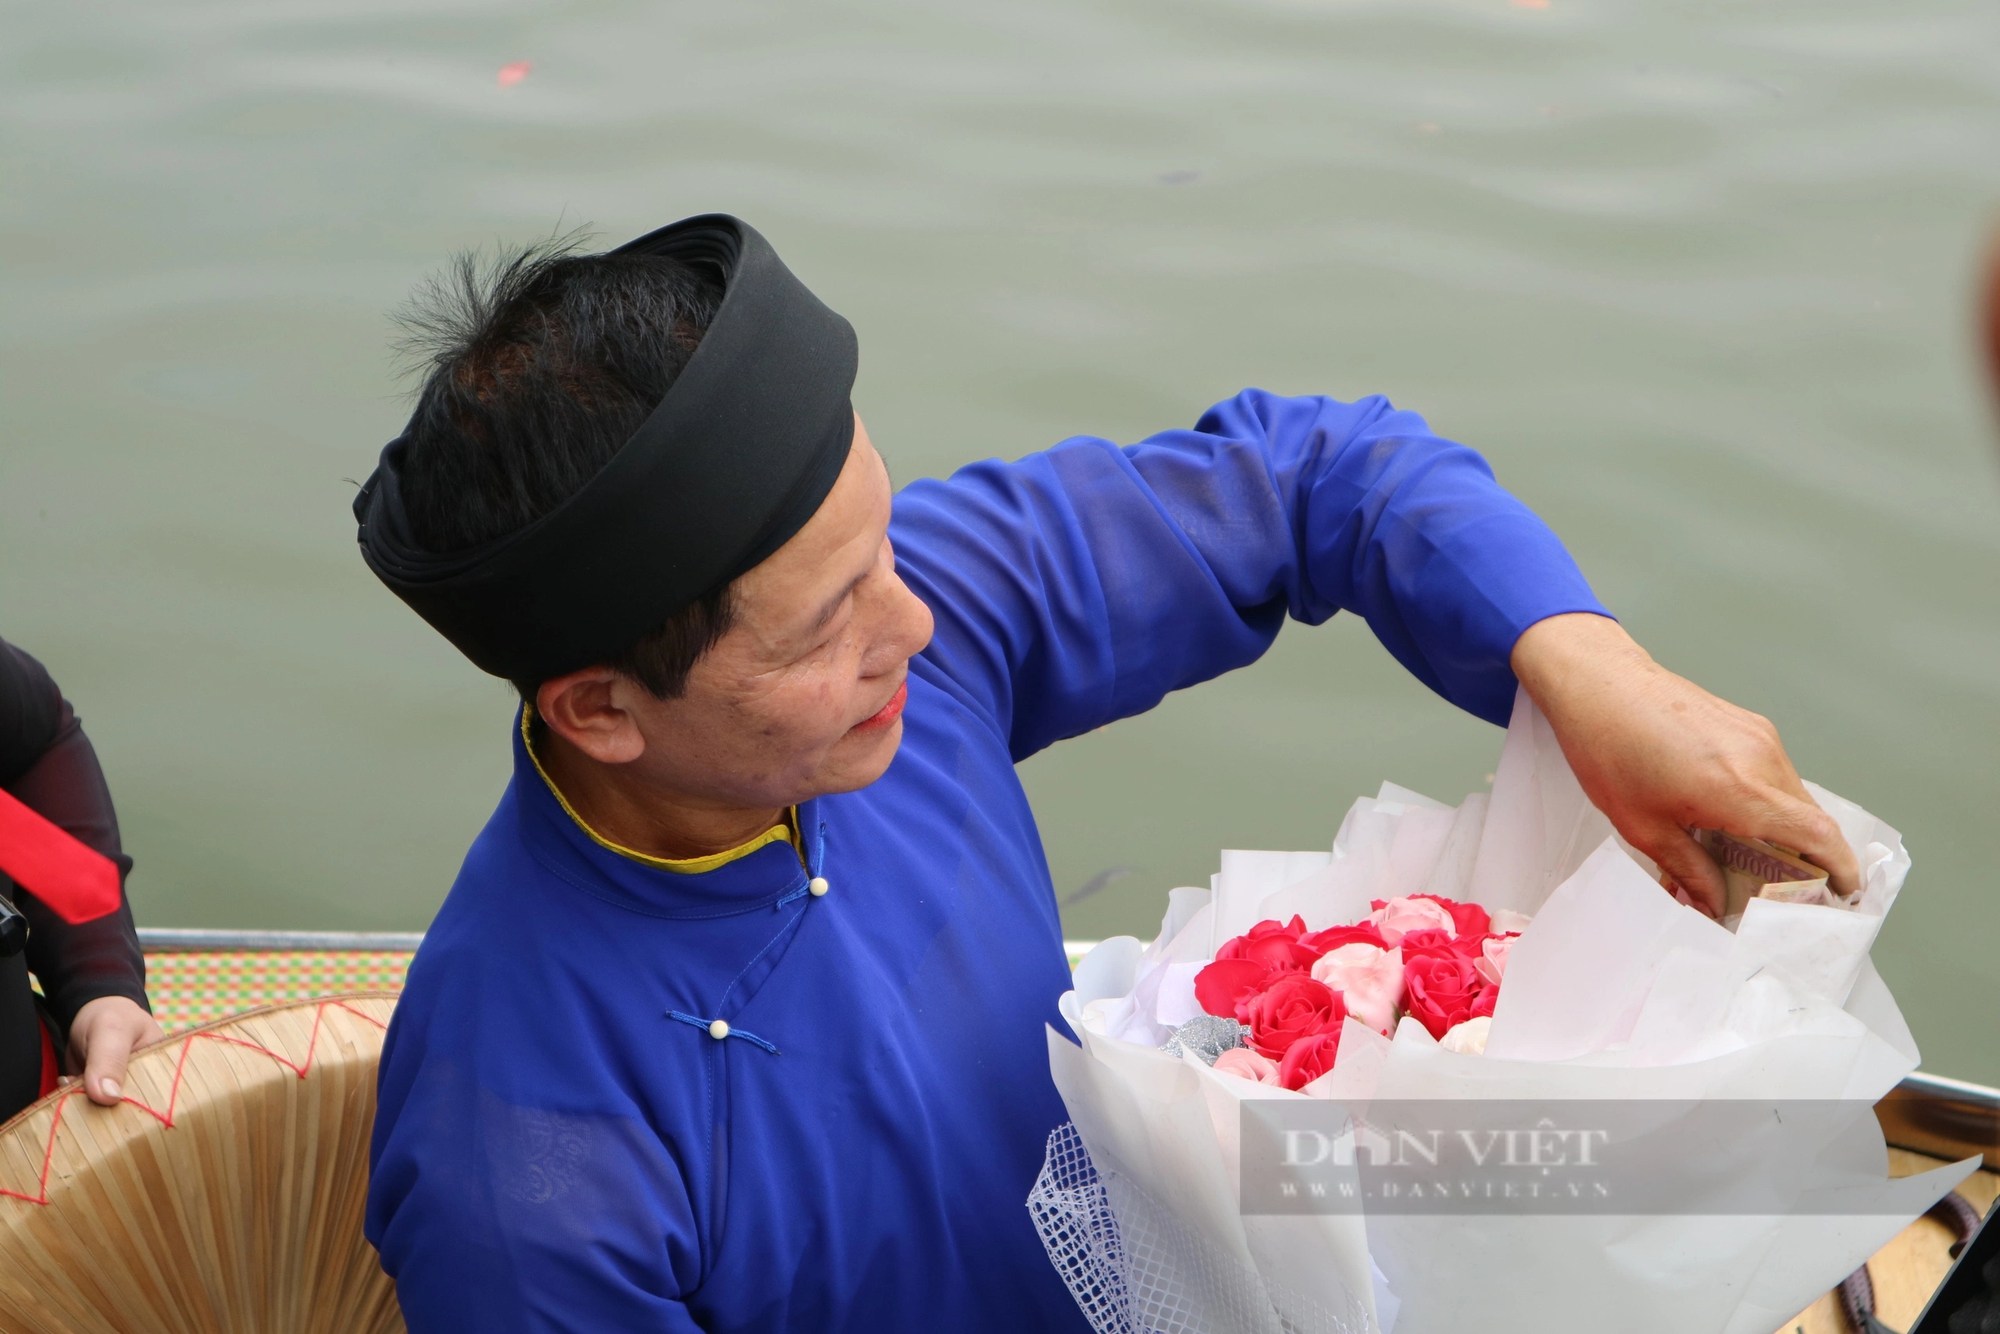 Hội Lim: Cảnh nhận tiền thưởng "mới lạ" khi hát Quan họ trên thuyền - Ảnh 4.